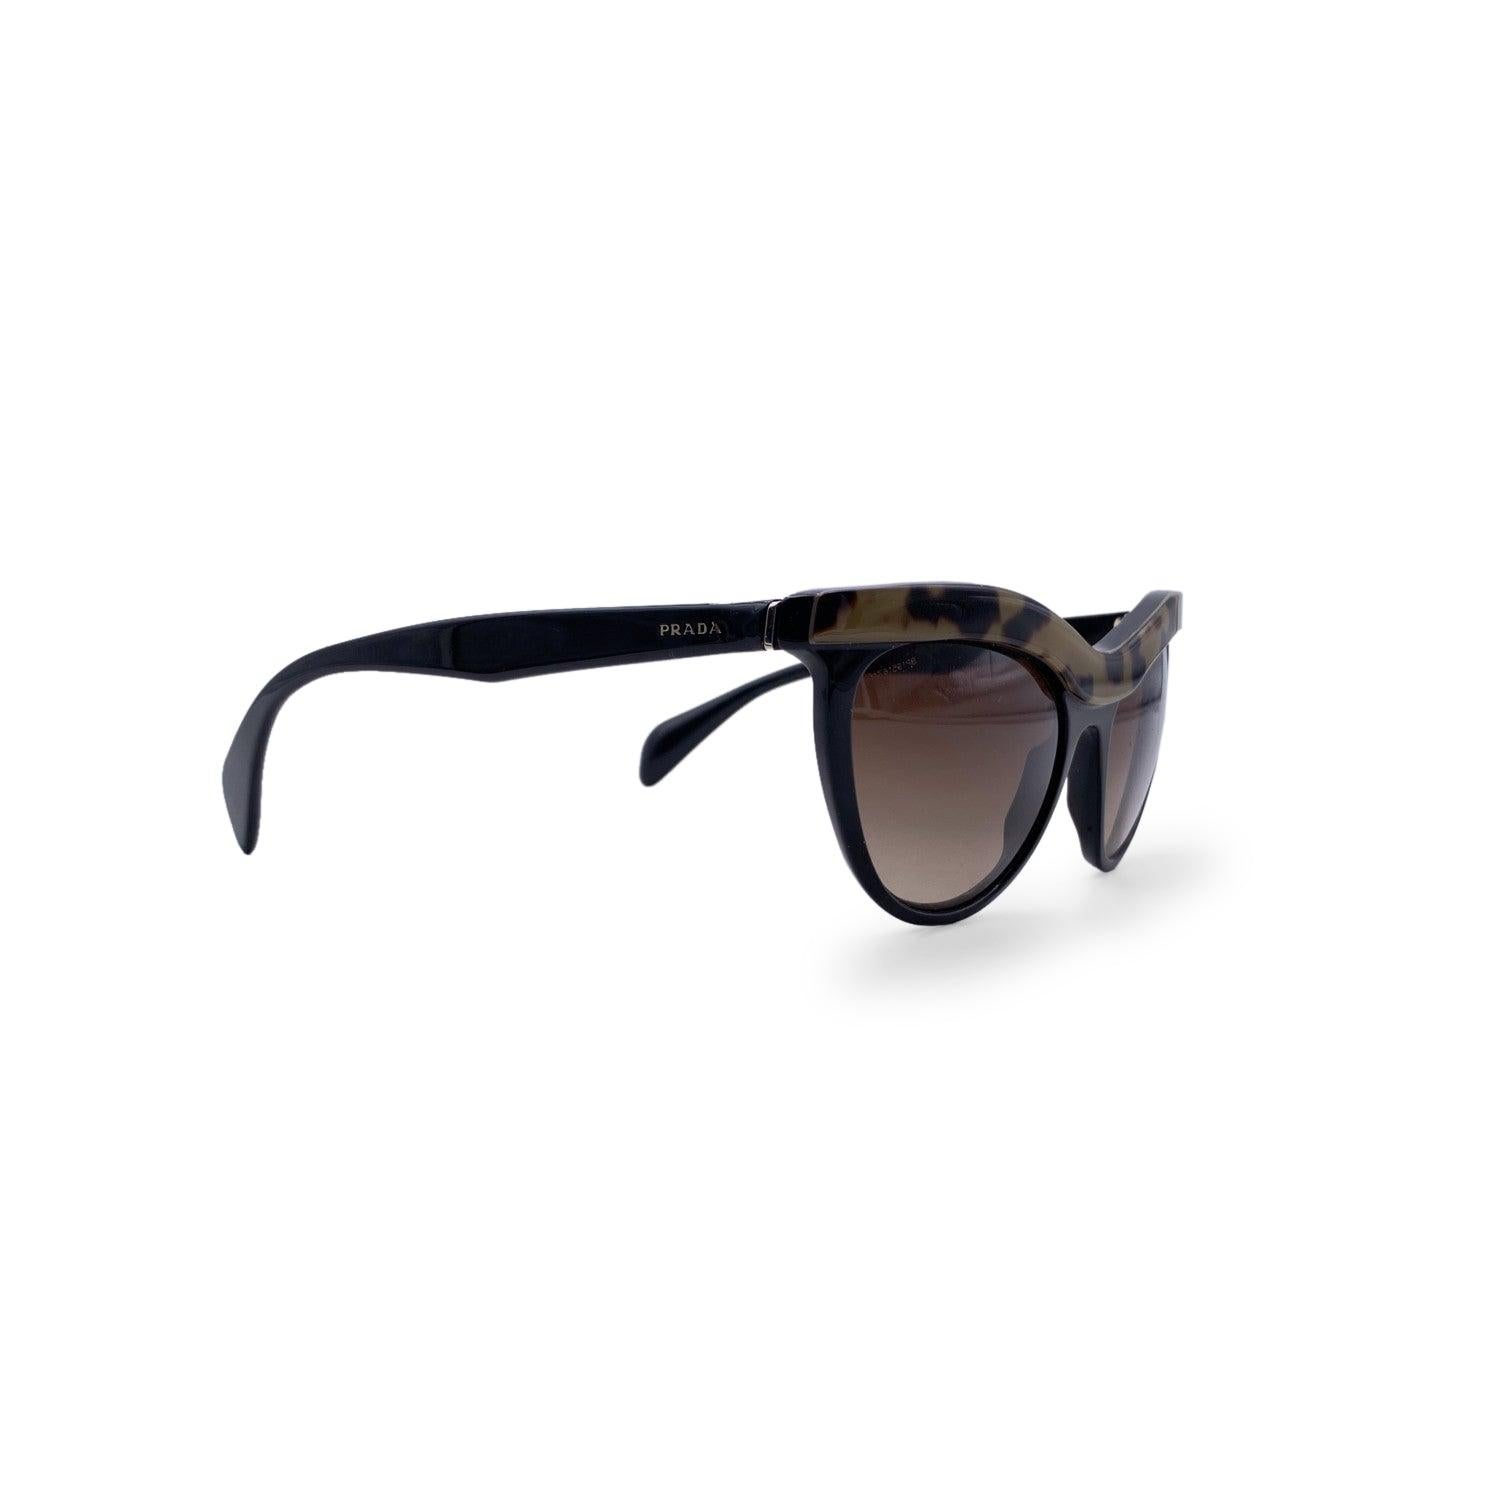 Magnifiques lunettes de soleil de Prada, mod. SPR 06P col.MA5-6S1. Forme œil de chat en acétate noir et tacheté. Logo sur les branches et lentilles marron dégradées. Mod & refs : mod. SPR 06P col.MA5-6S1 - 54/19 - 140 - 3N. Fabriqué en Italie